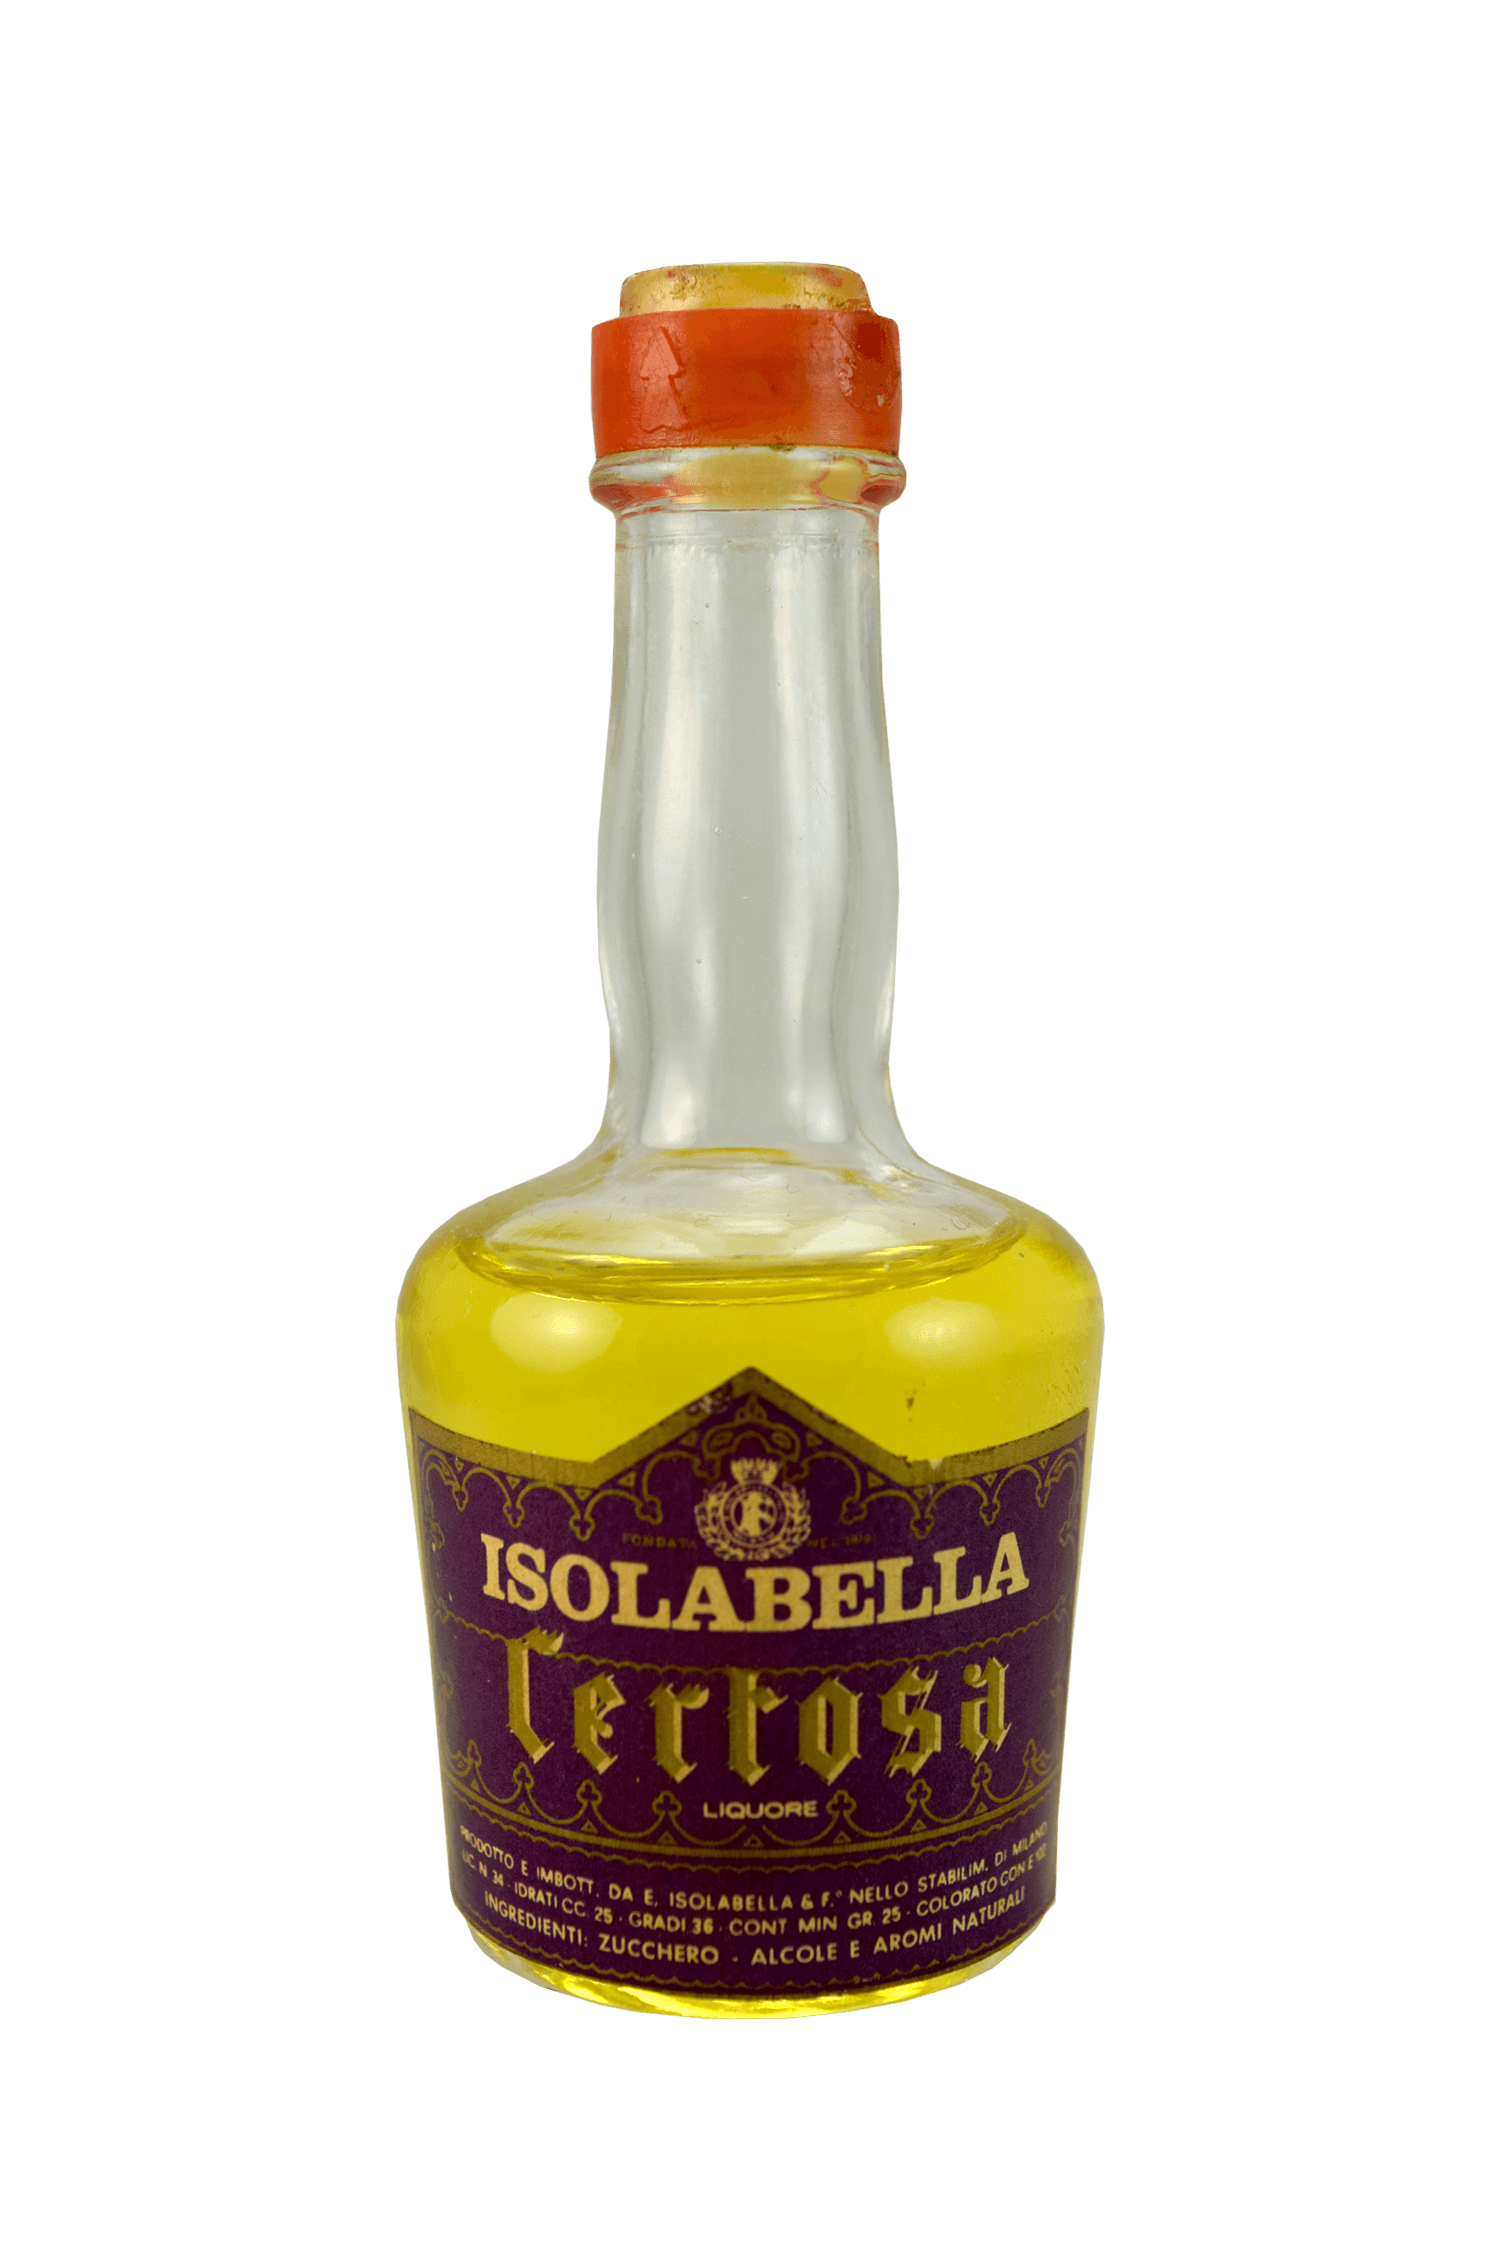 Isolabella Certosa Liquore